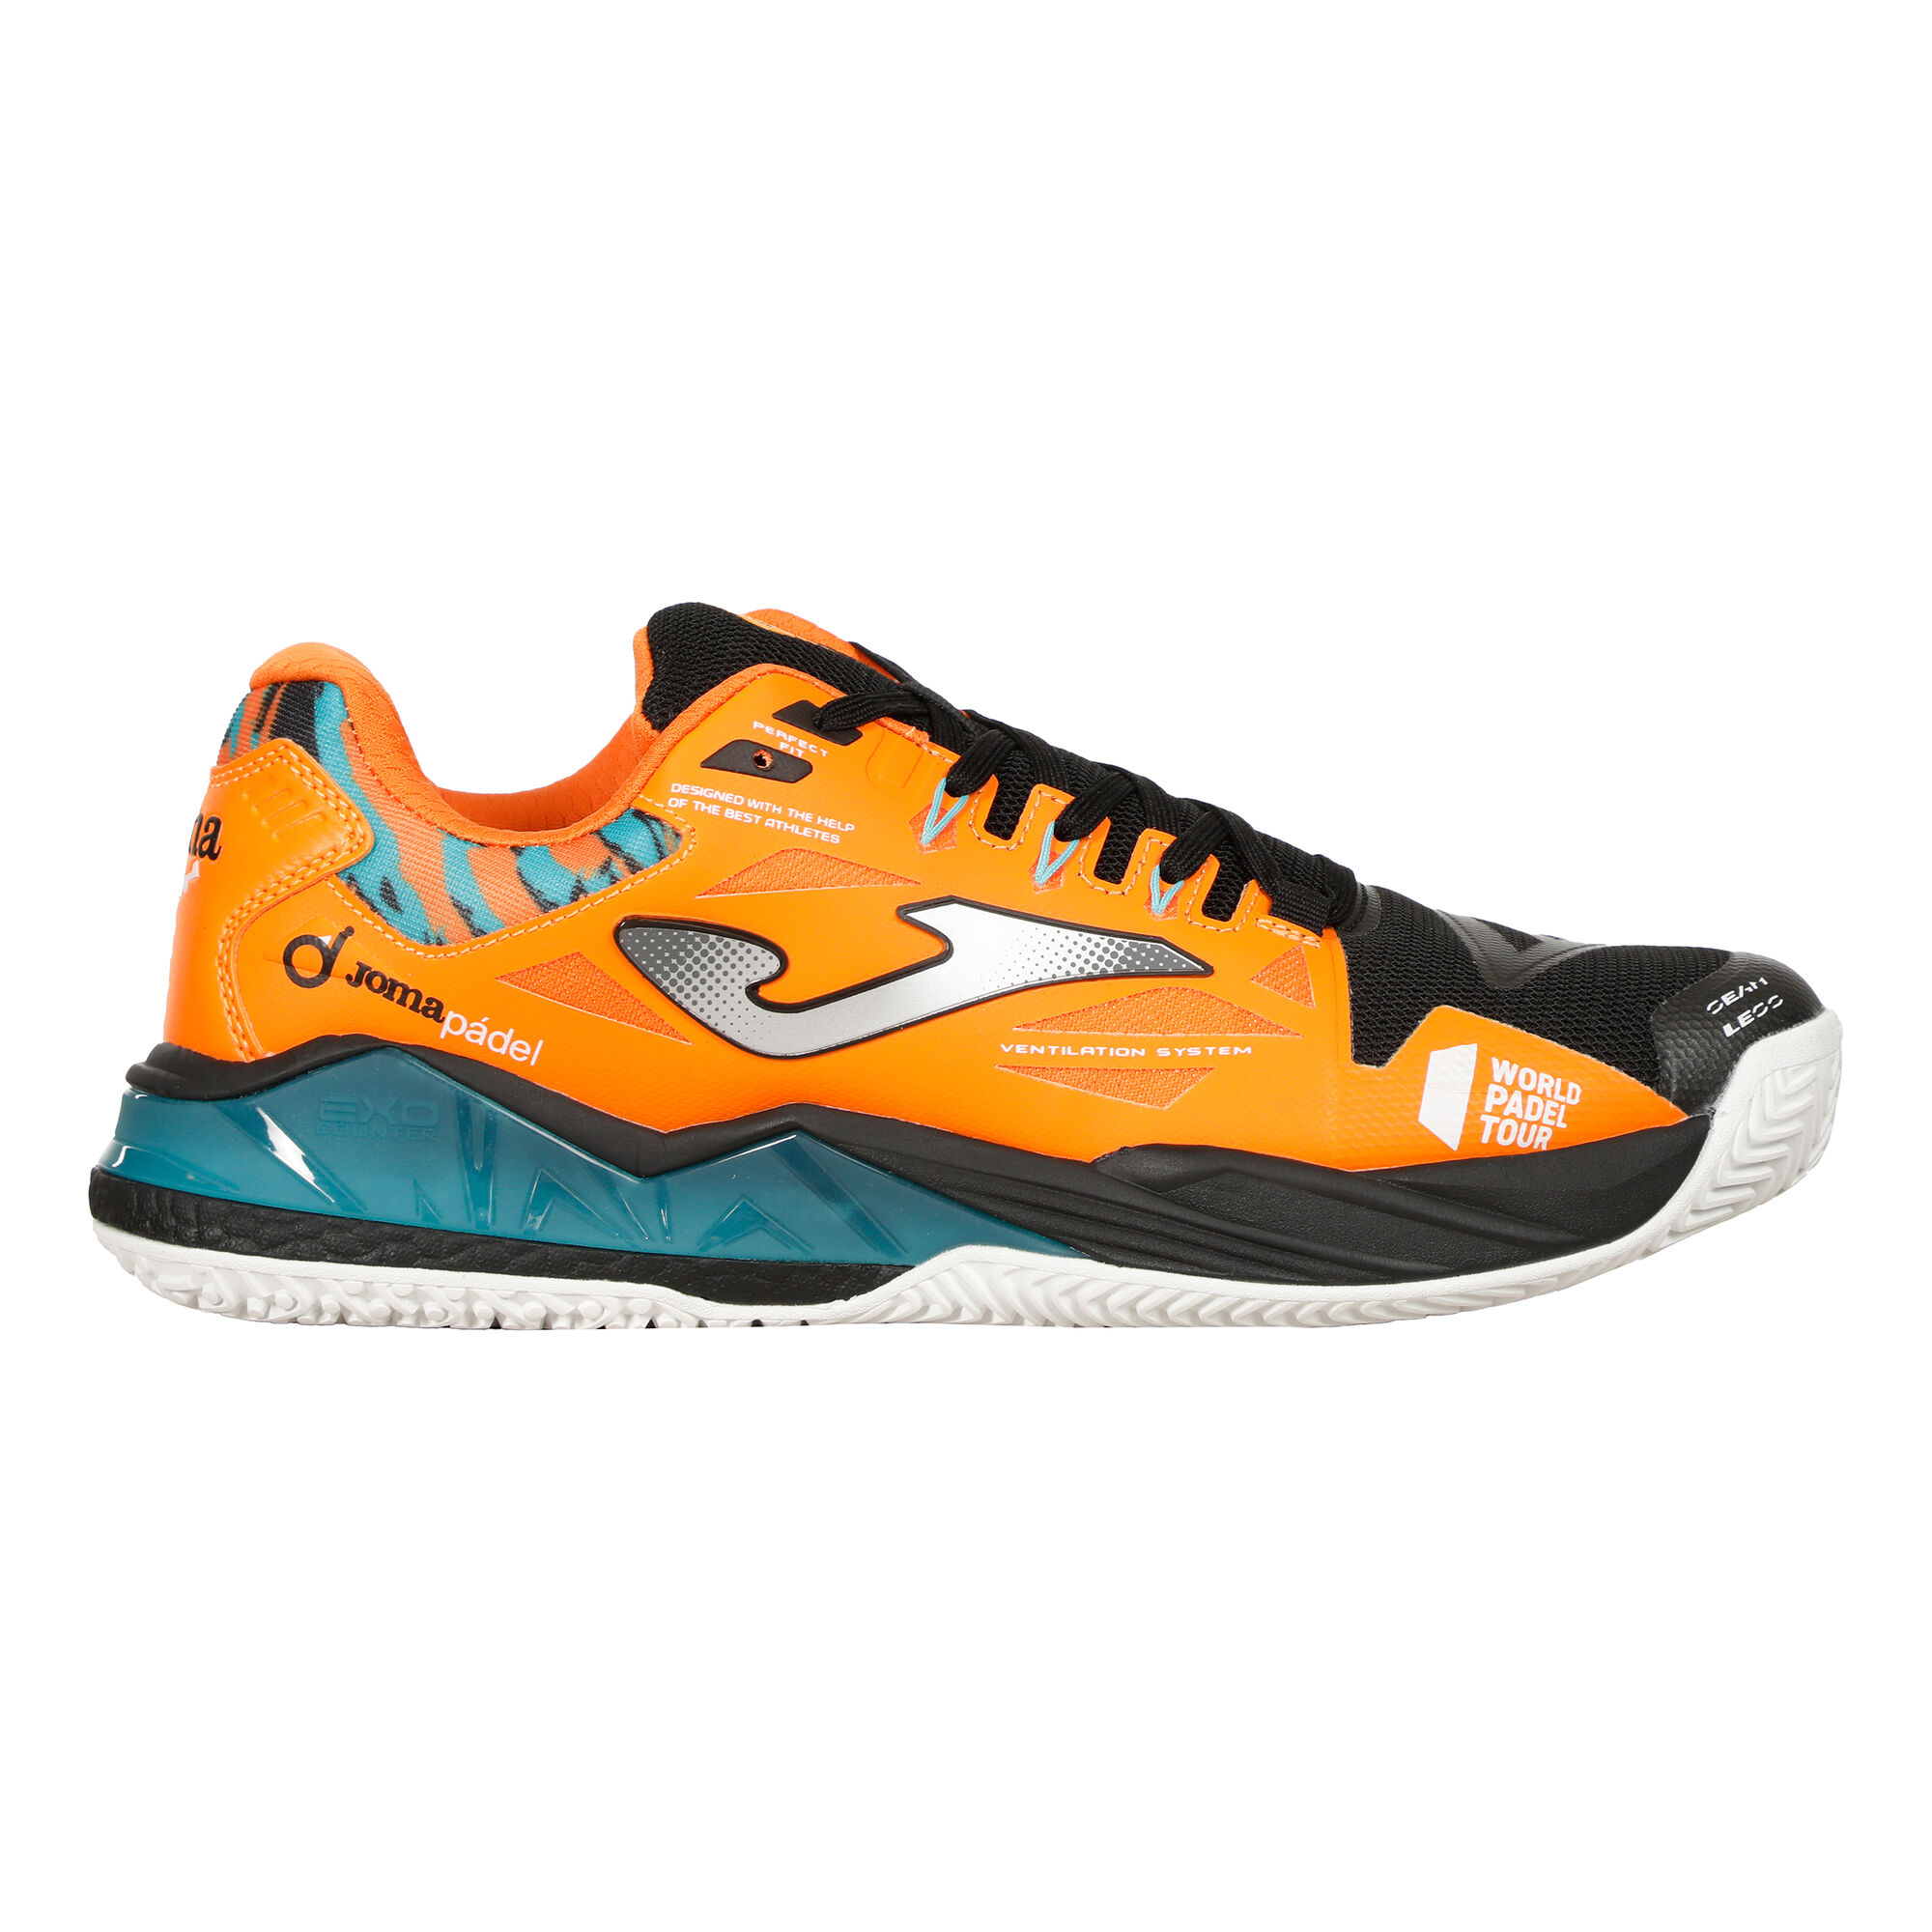 Buy Joma Spin Padel Shoe Men Orange, Black online